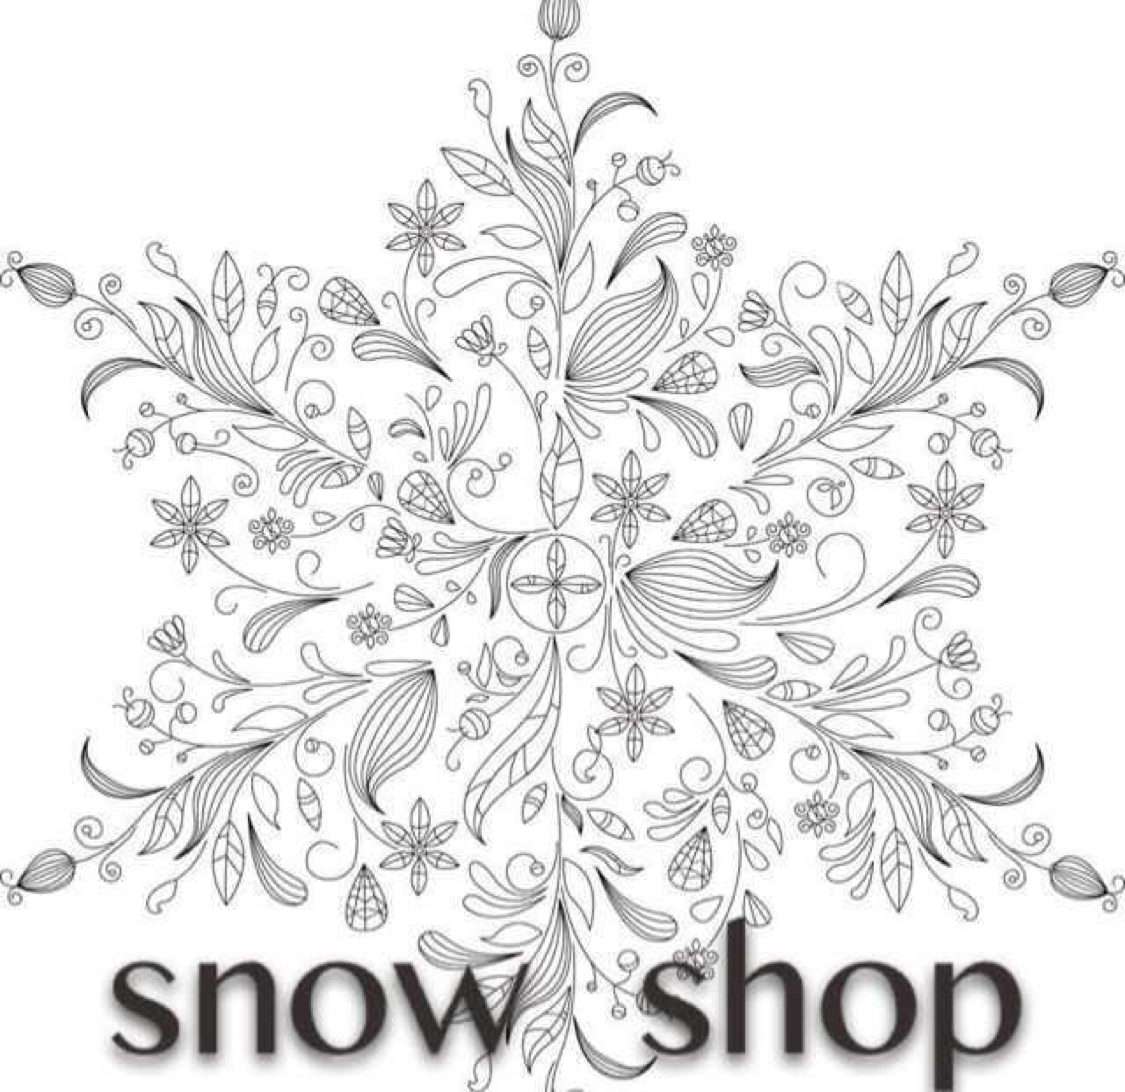 Snows Shop是正品吗淘宝店